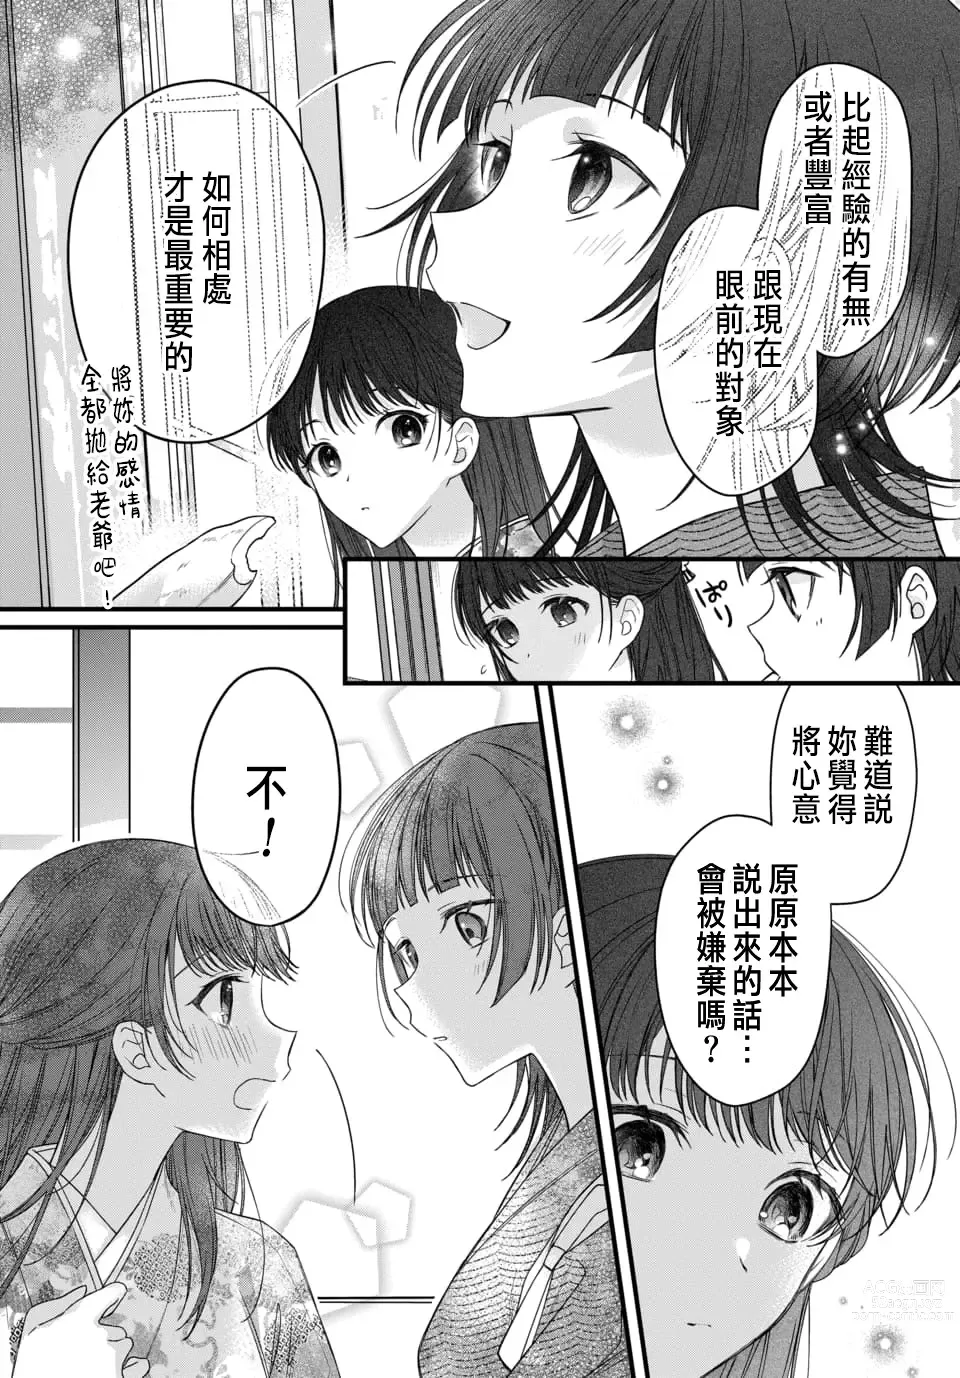 Page 224 of manga Tsuki e no Yomeiri 1-6